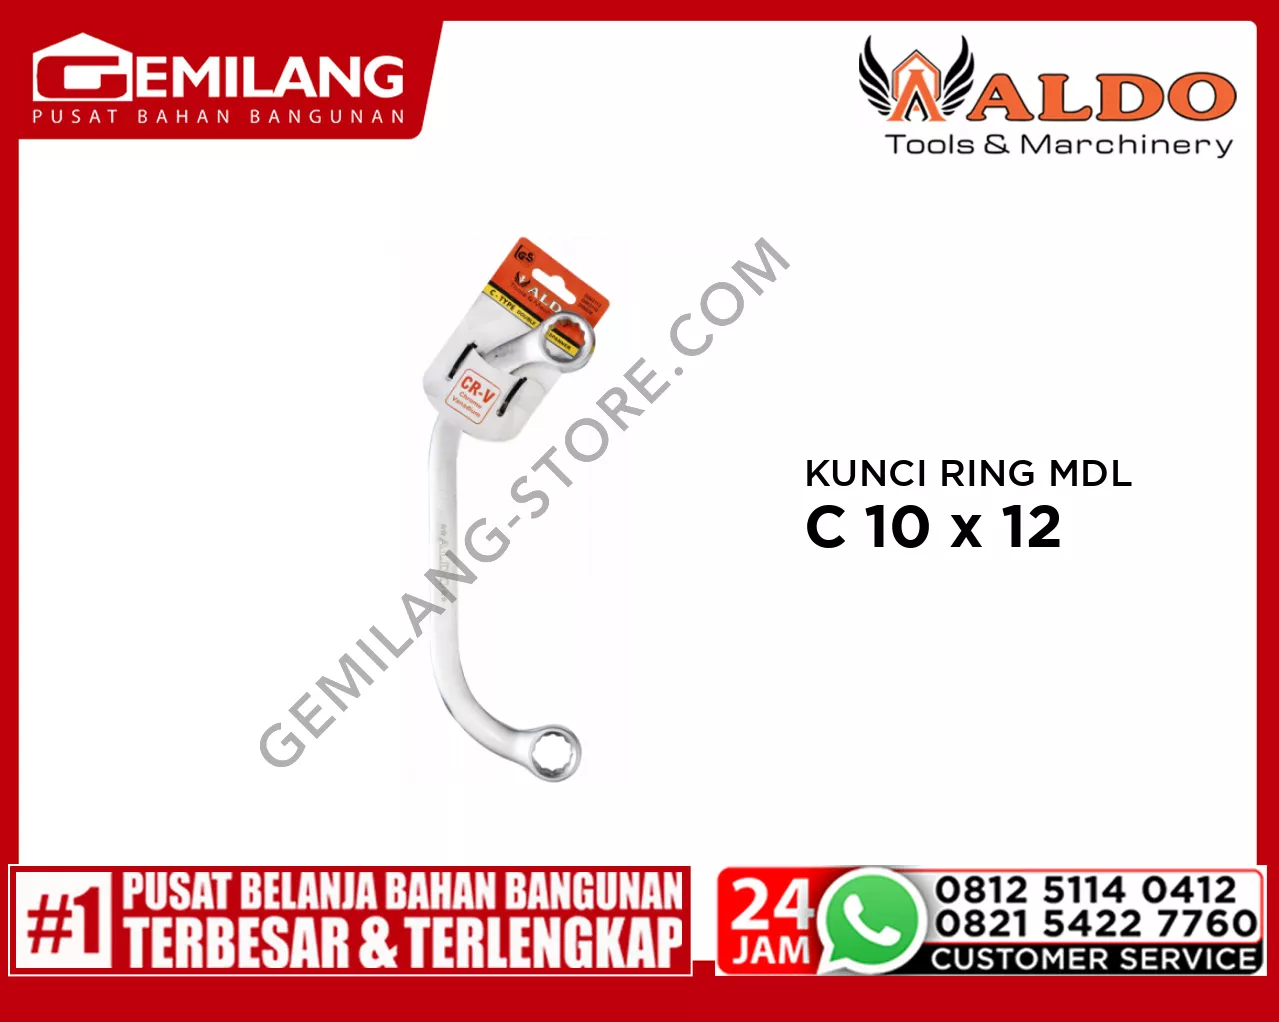 ALDO KUNCI RING MODEL C 10 x 12